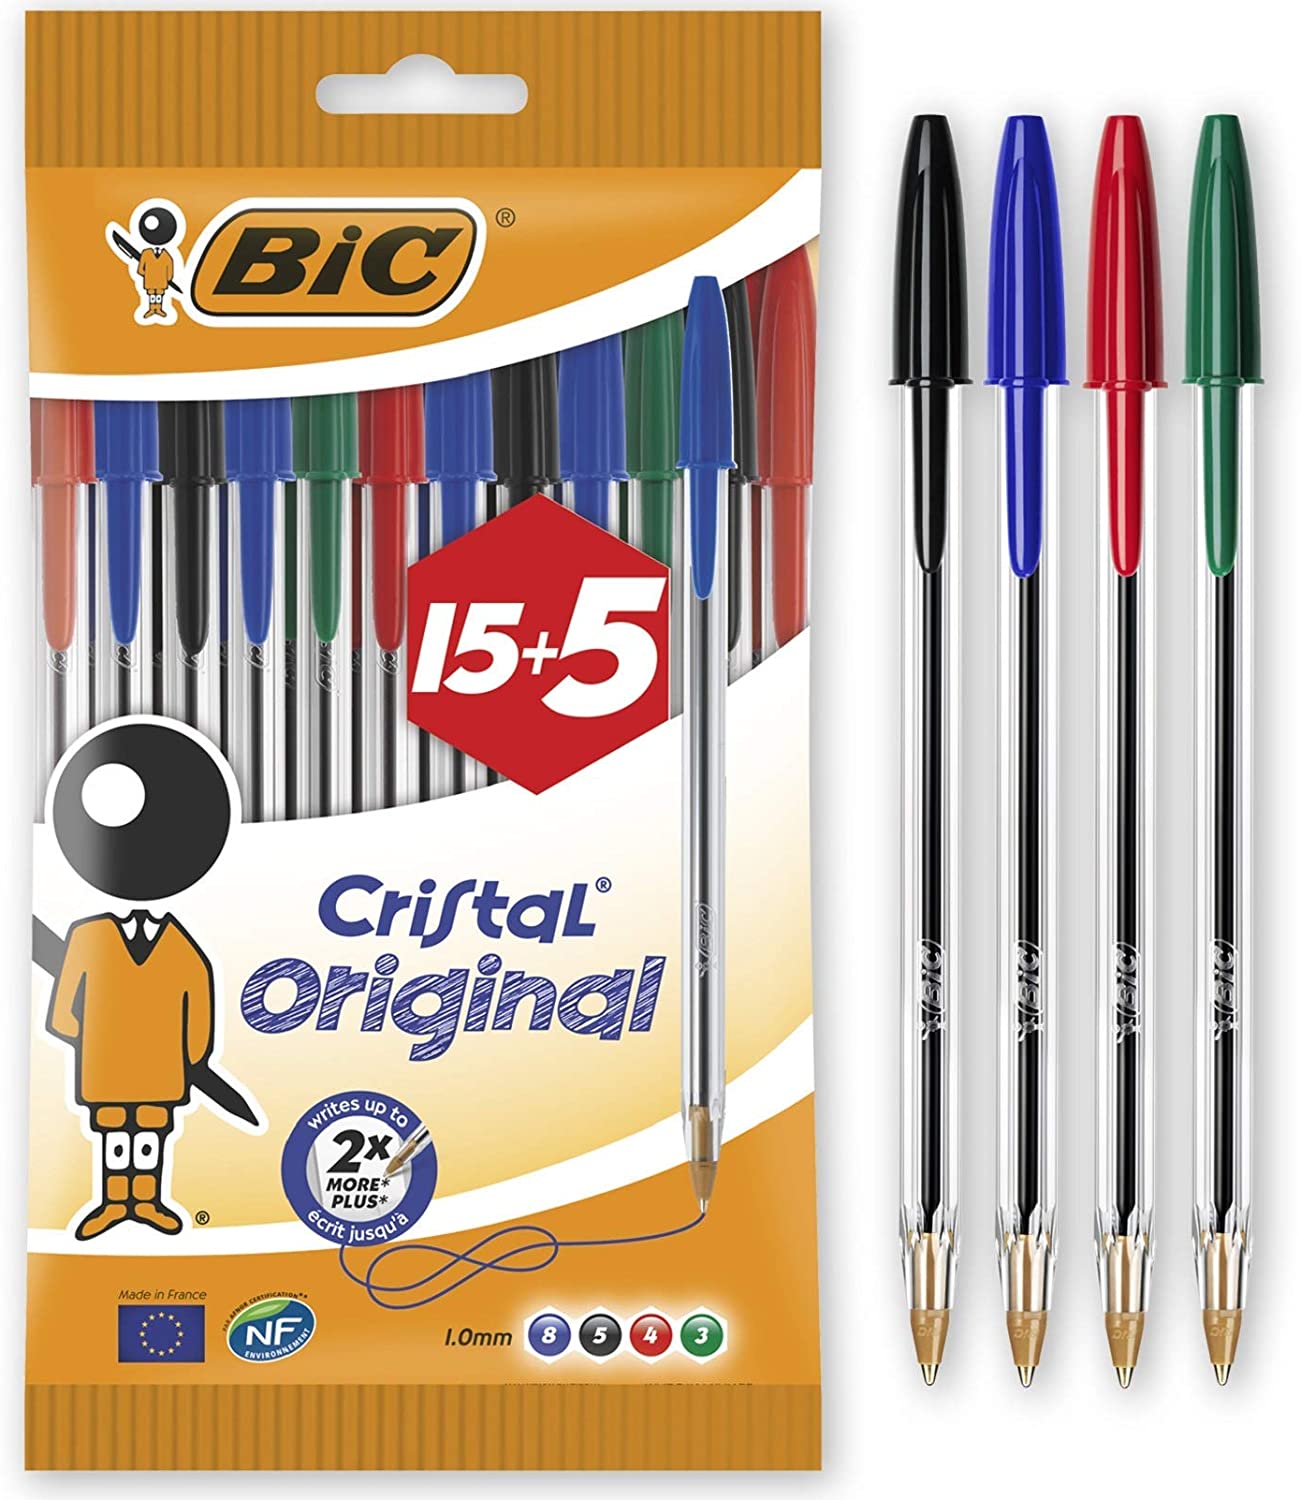 Bic Cristal Original 15+5 Pack de 20 Boligrafos Colores Surtidos